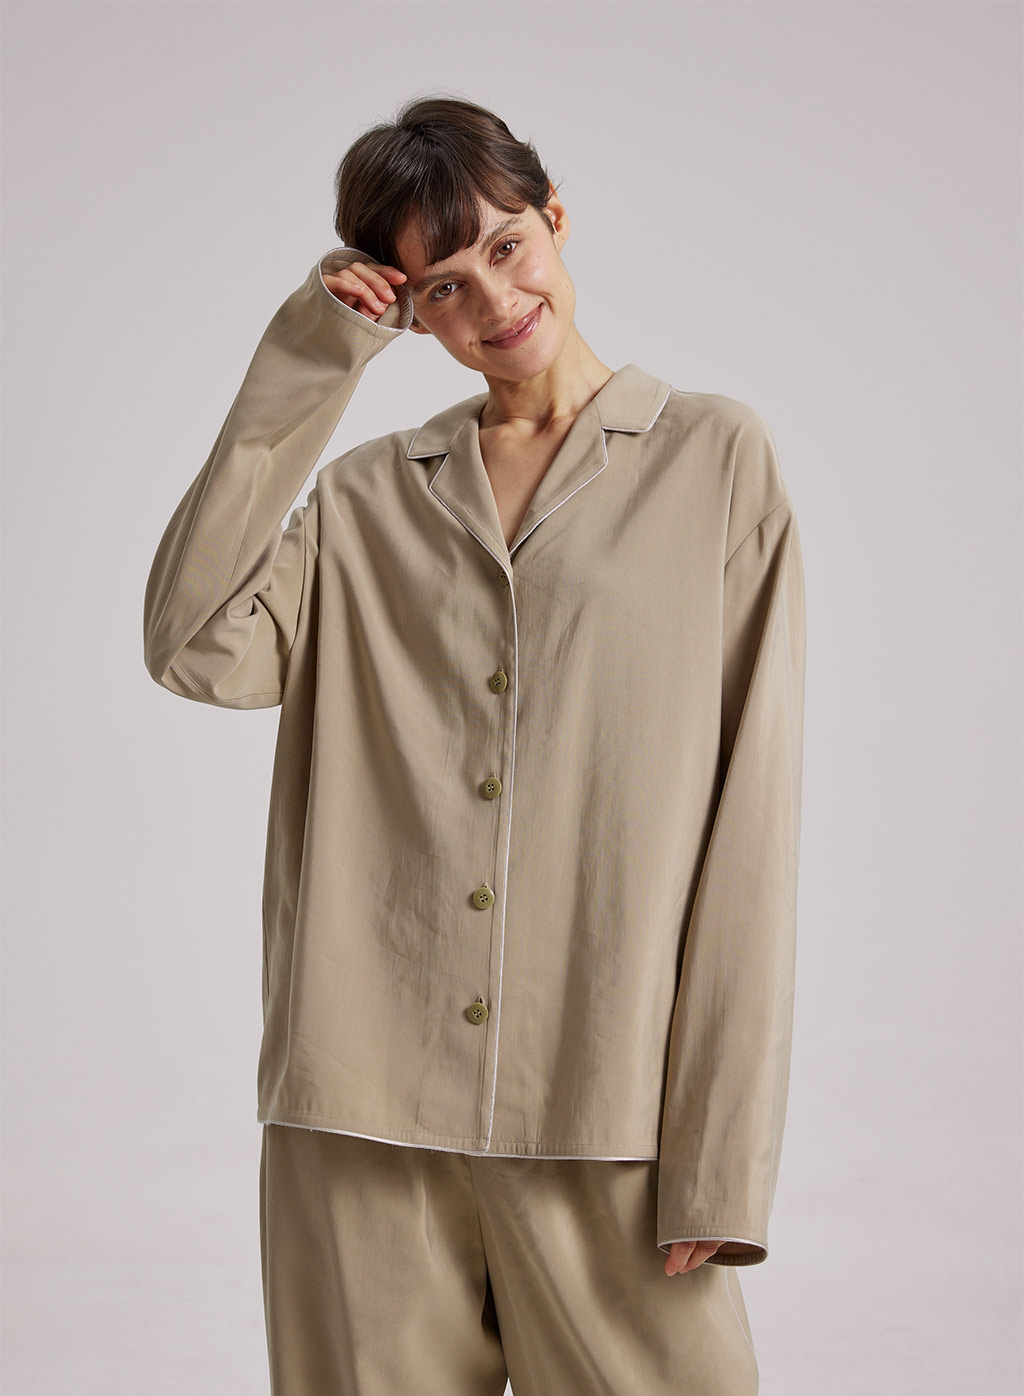 Button Up Pajama Shirt, Notched Collar Lounge Shirt